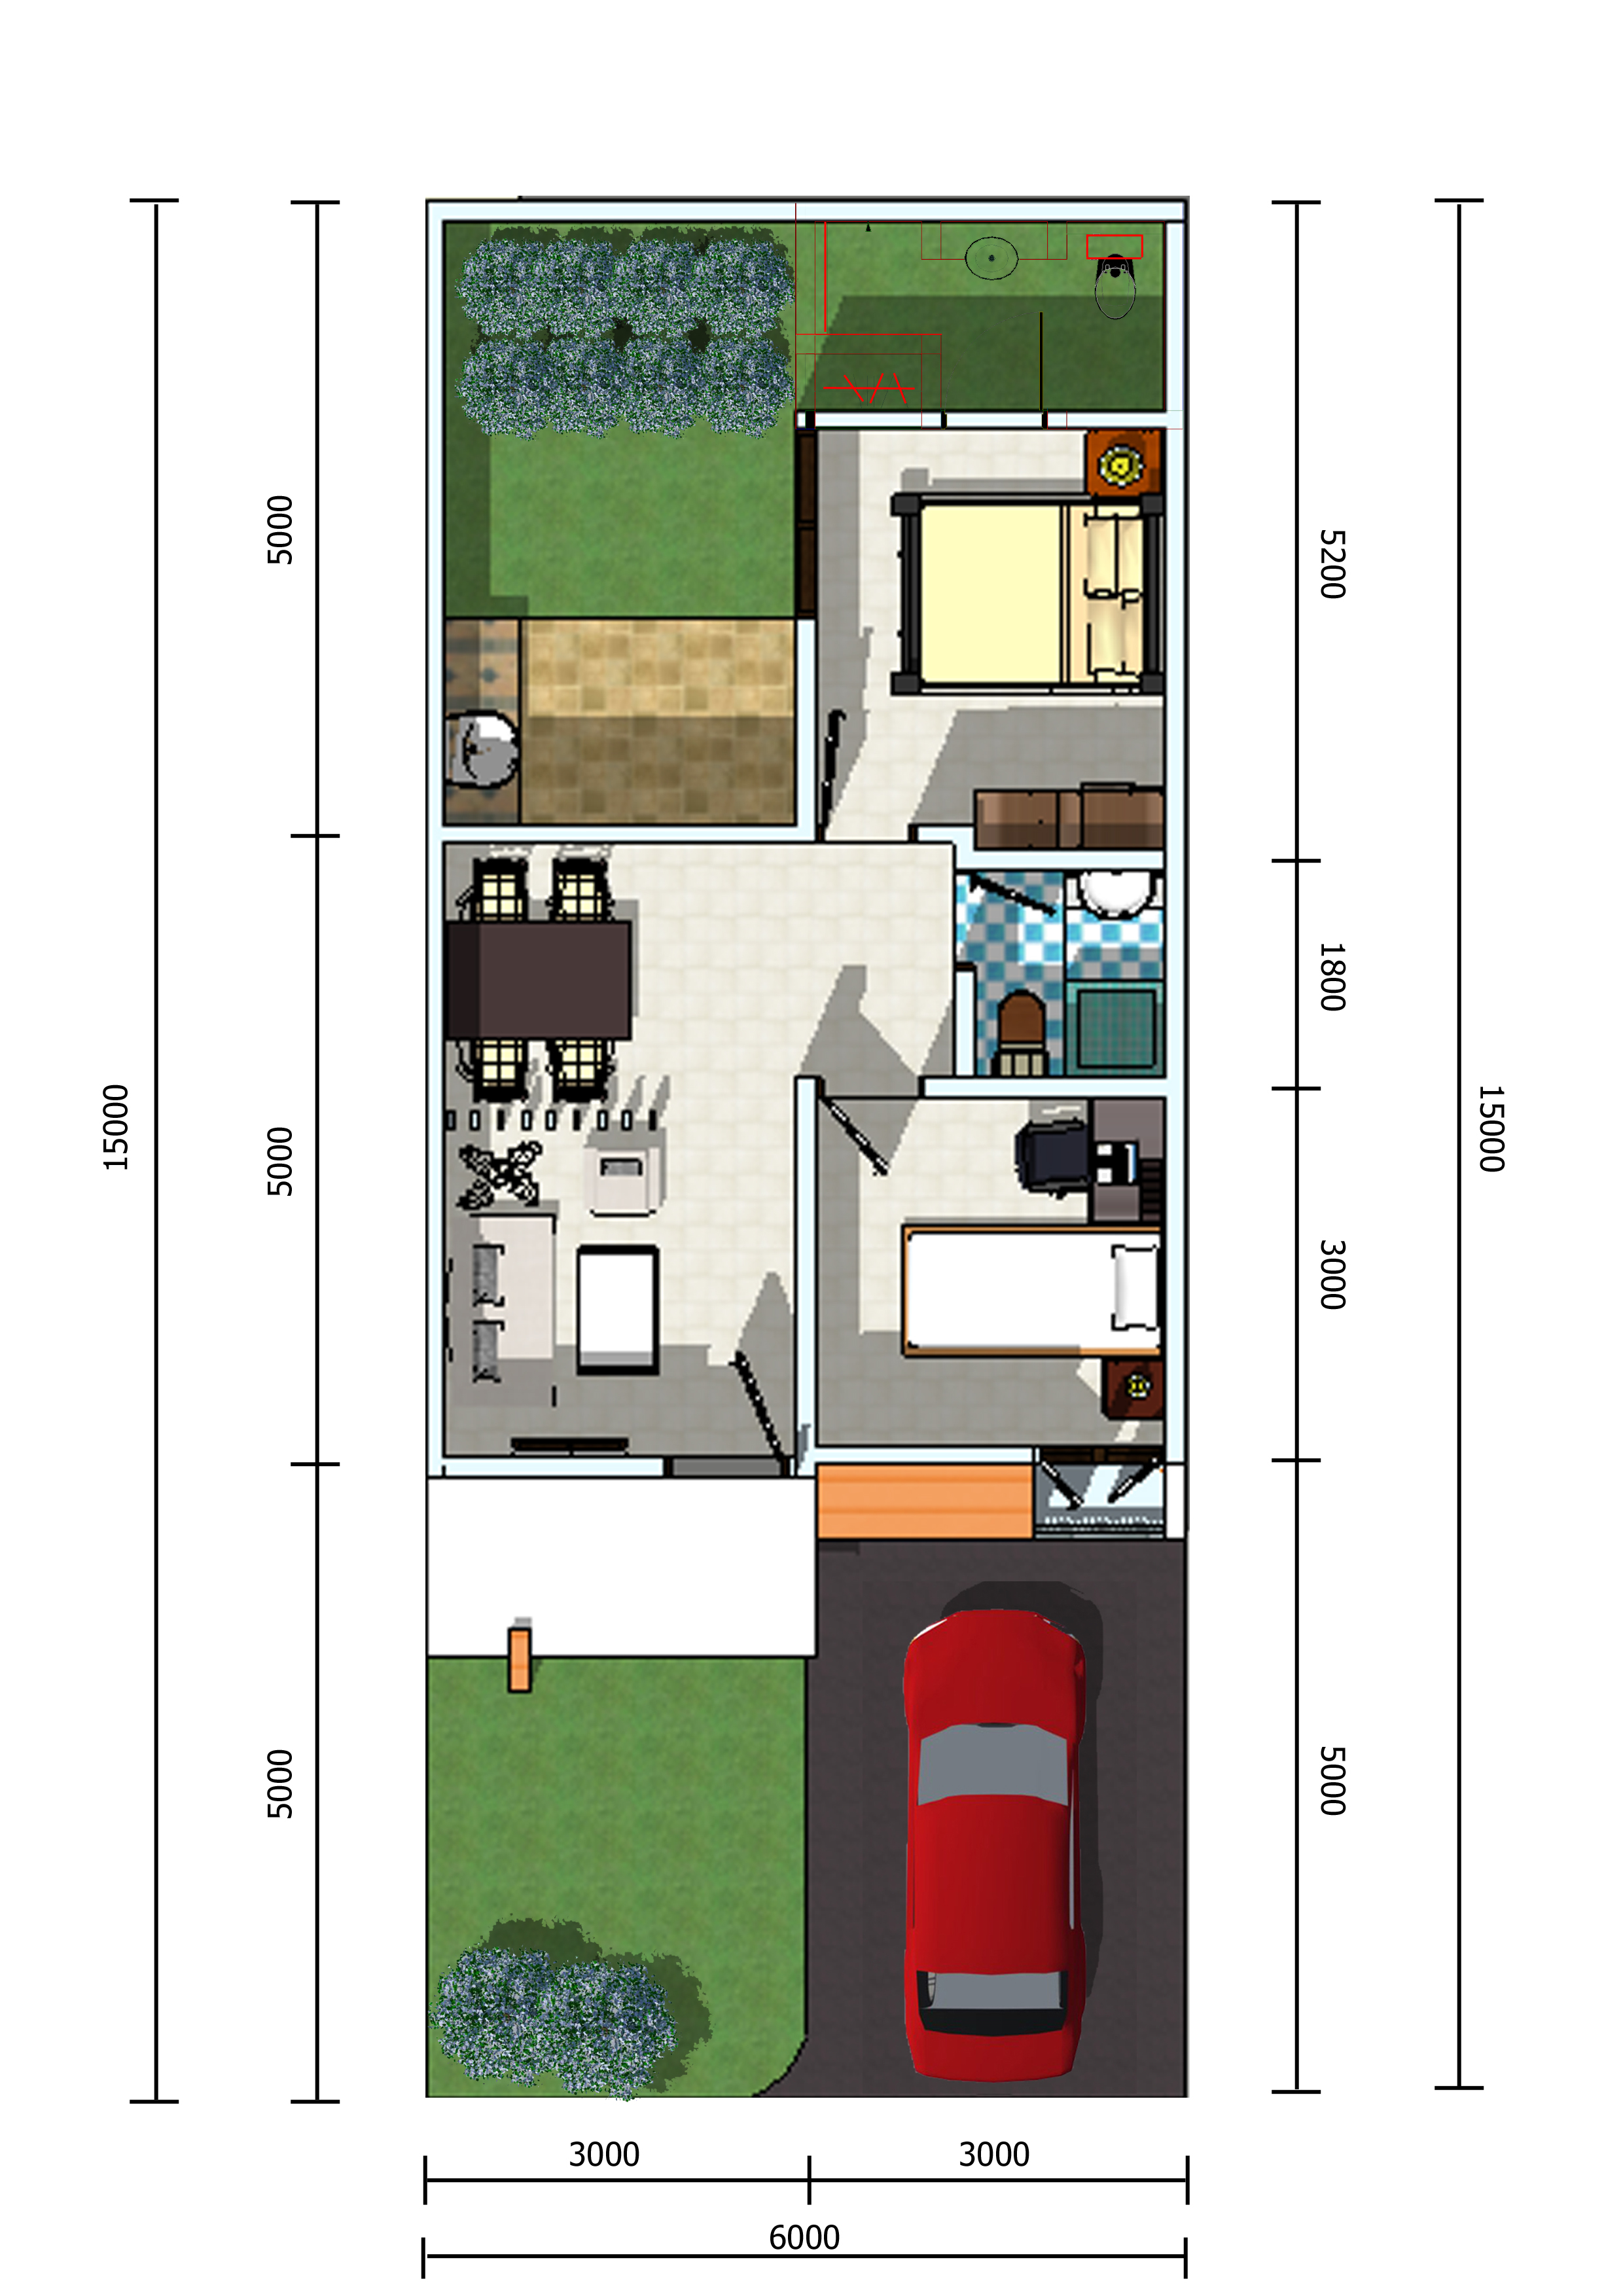 Contoh Gambar Desain Rumah  6x6 Informasi Desain dan Tipe 